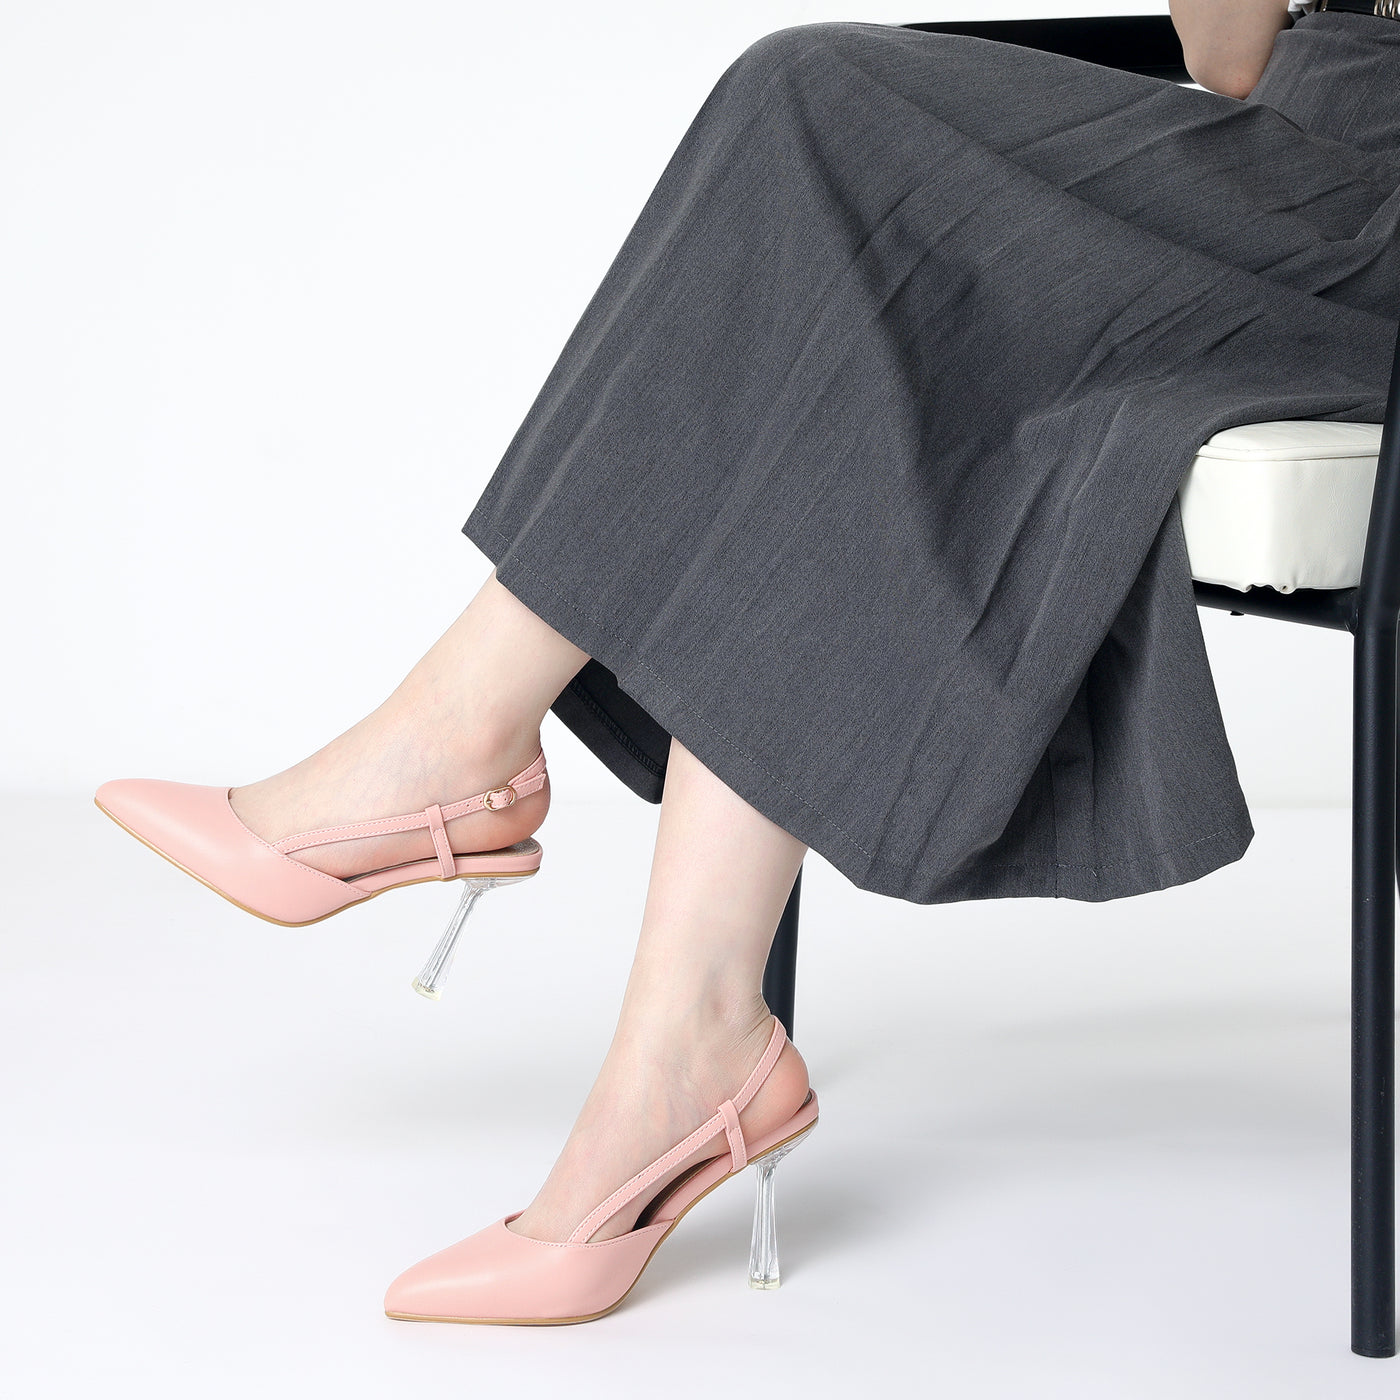 Allegra K Women's Slingback Stiletto Clear Heels Pointed Toe Pump